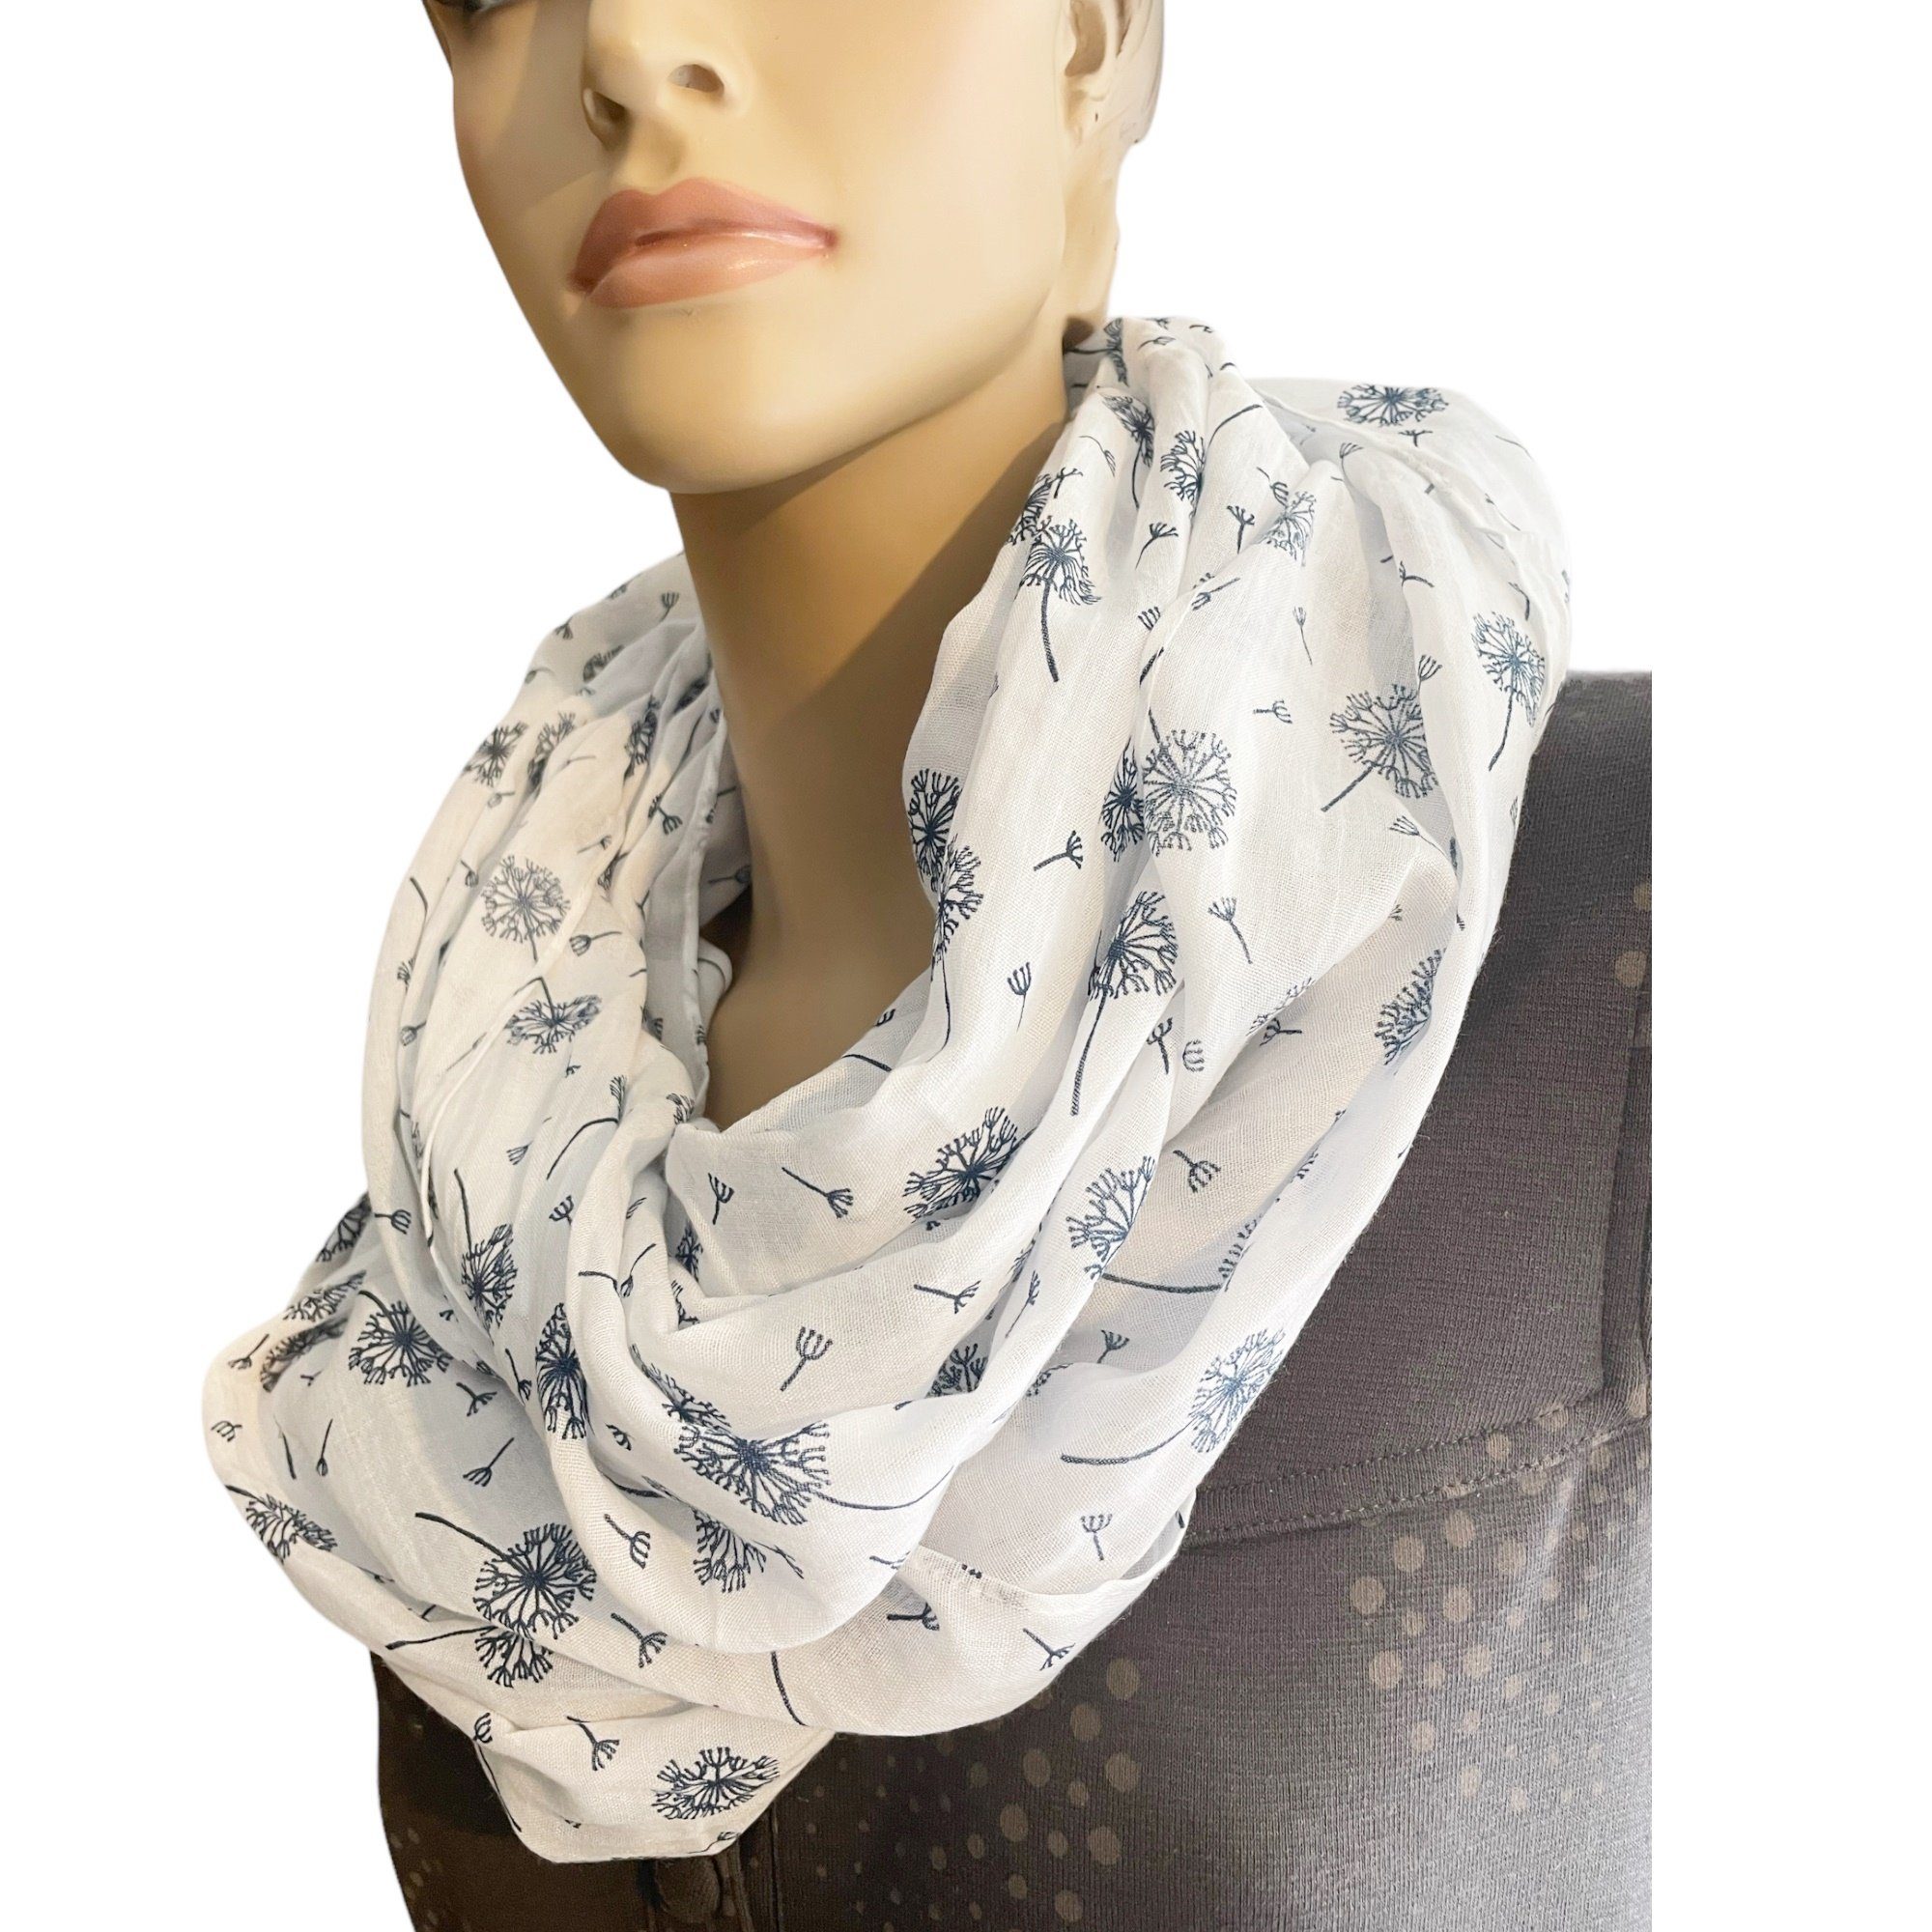 & Schal Taschen4life Trend Pusteblumen Damen mit Farbwahl, SS-731 Loop Schals Tücher print, weiß Muster, Sommer